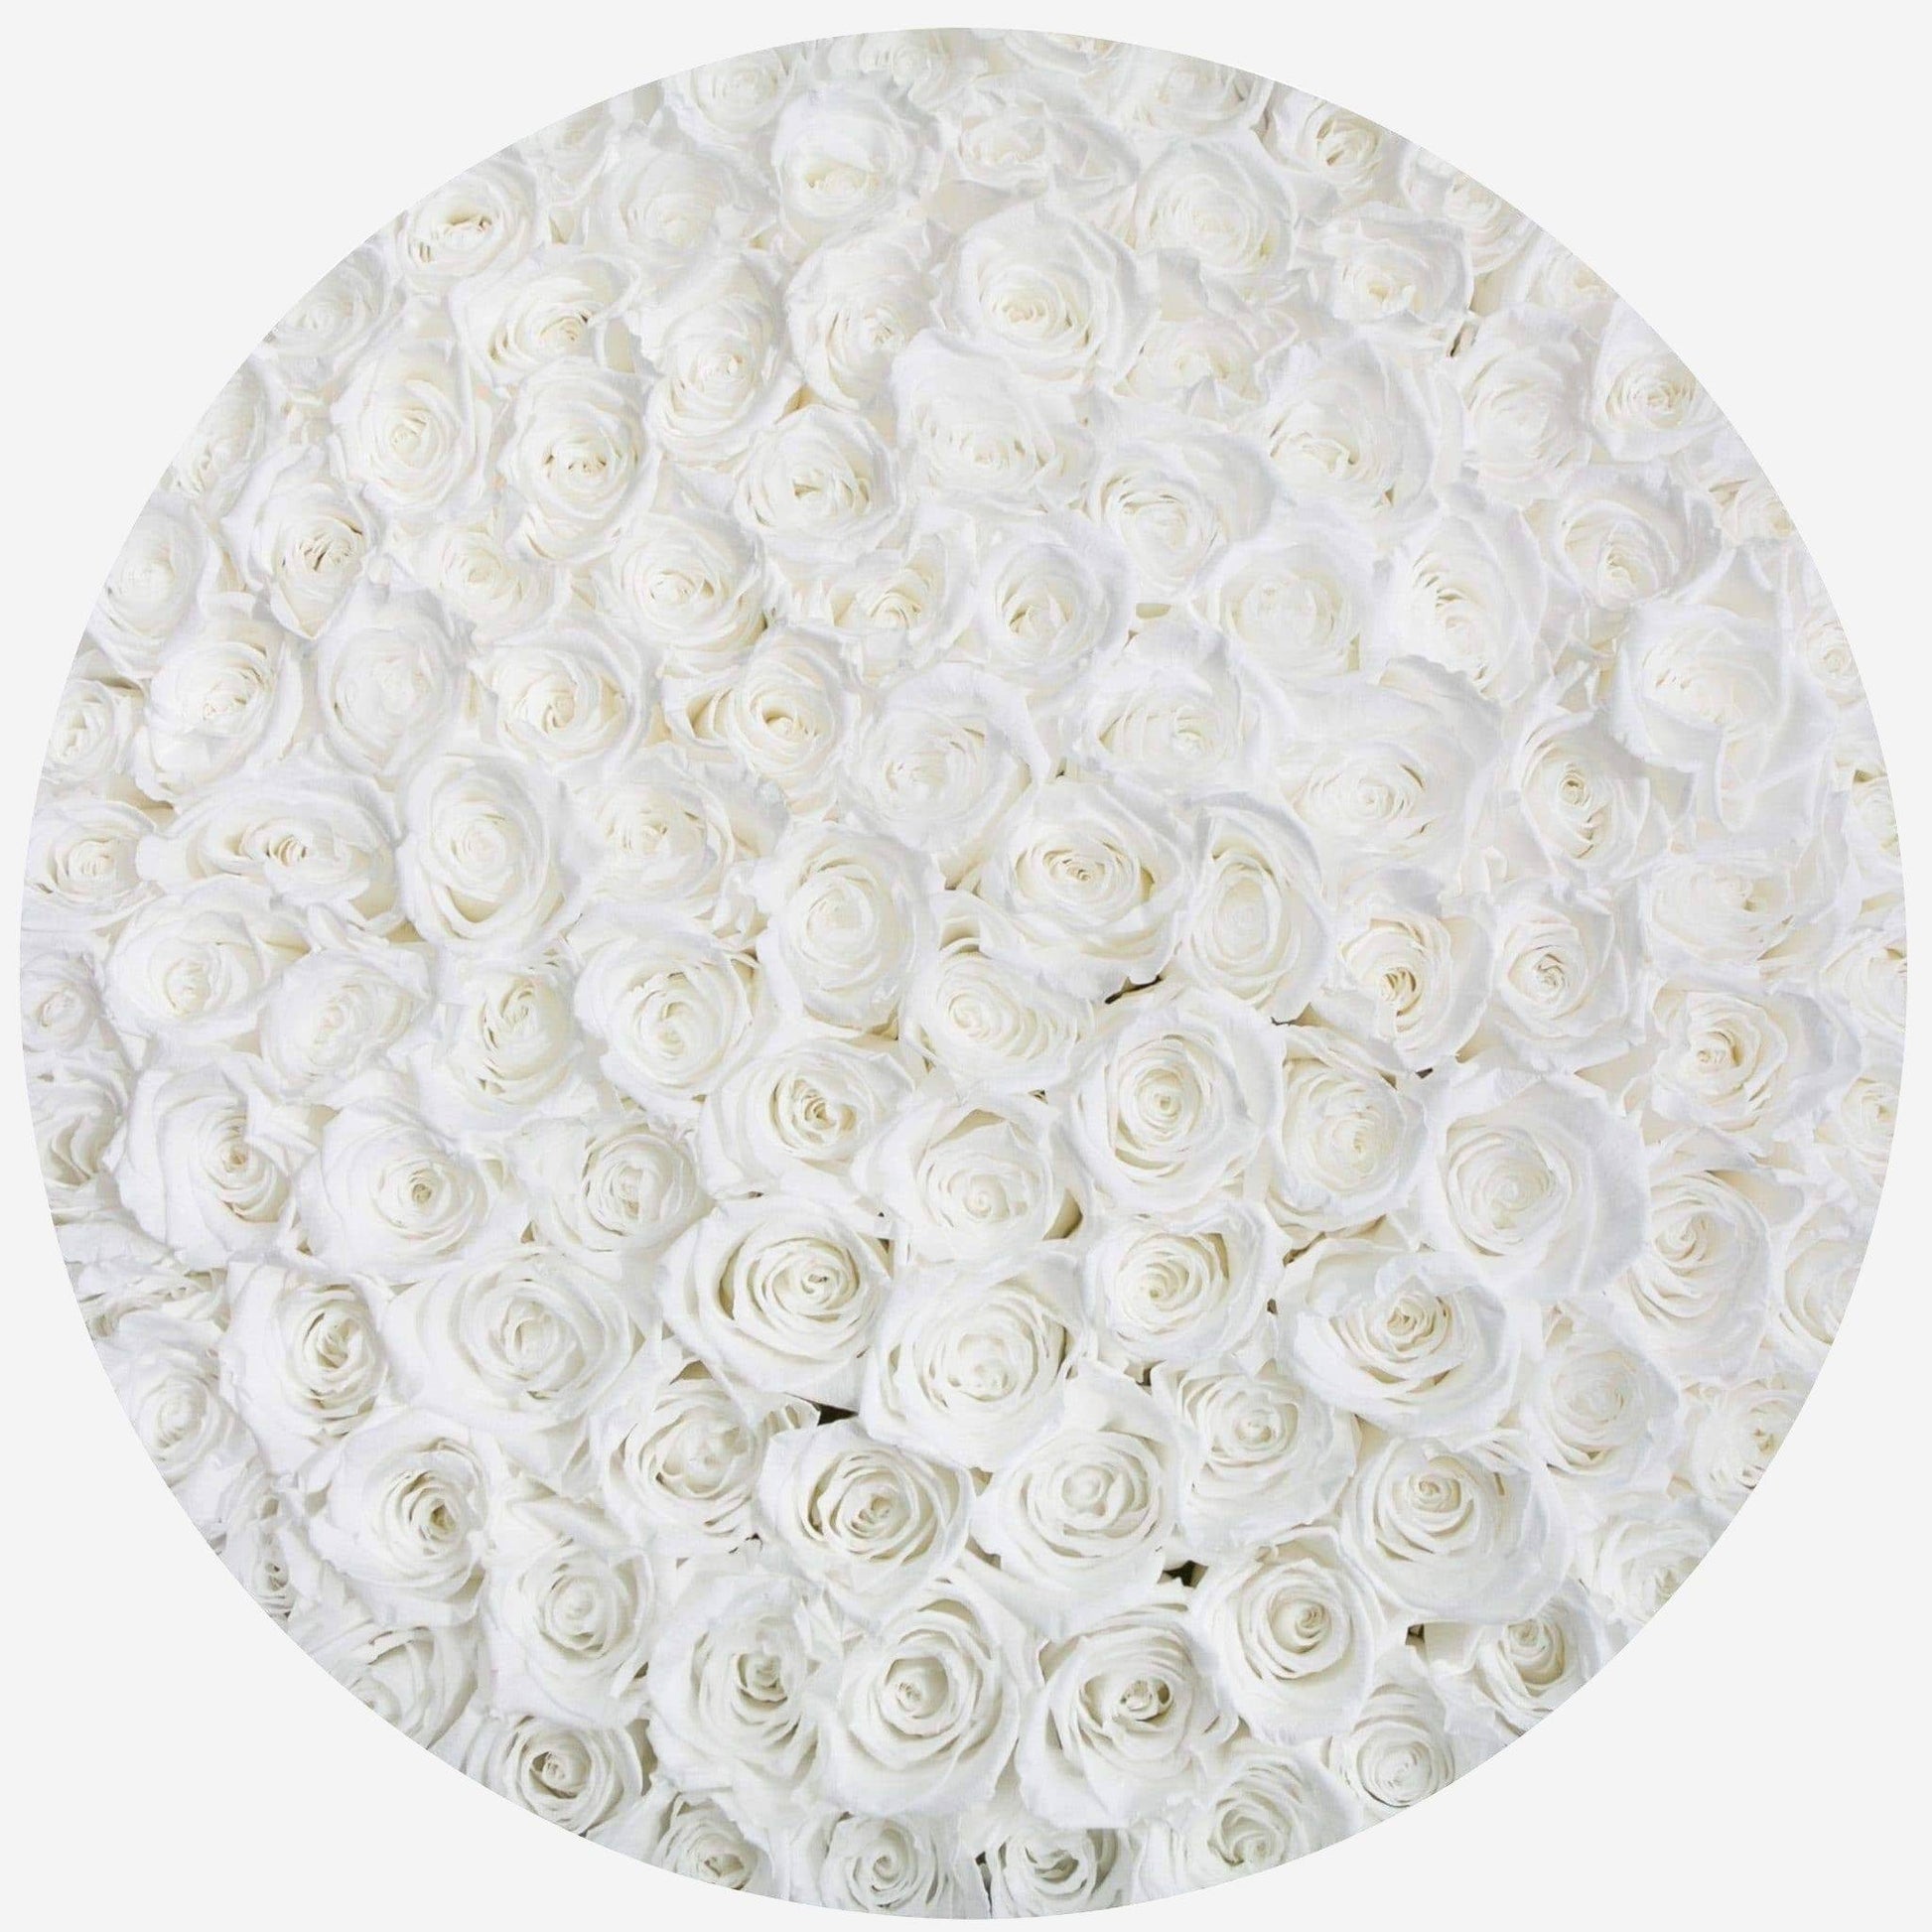 Deluxe Black Box | White Roses - The Million Roses